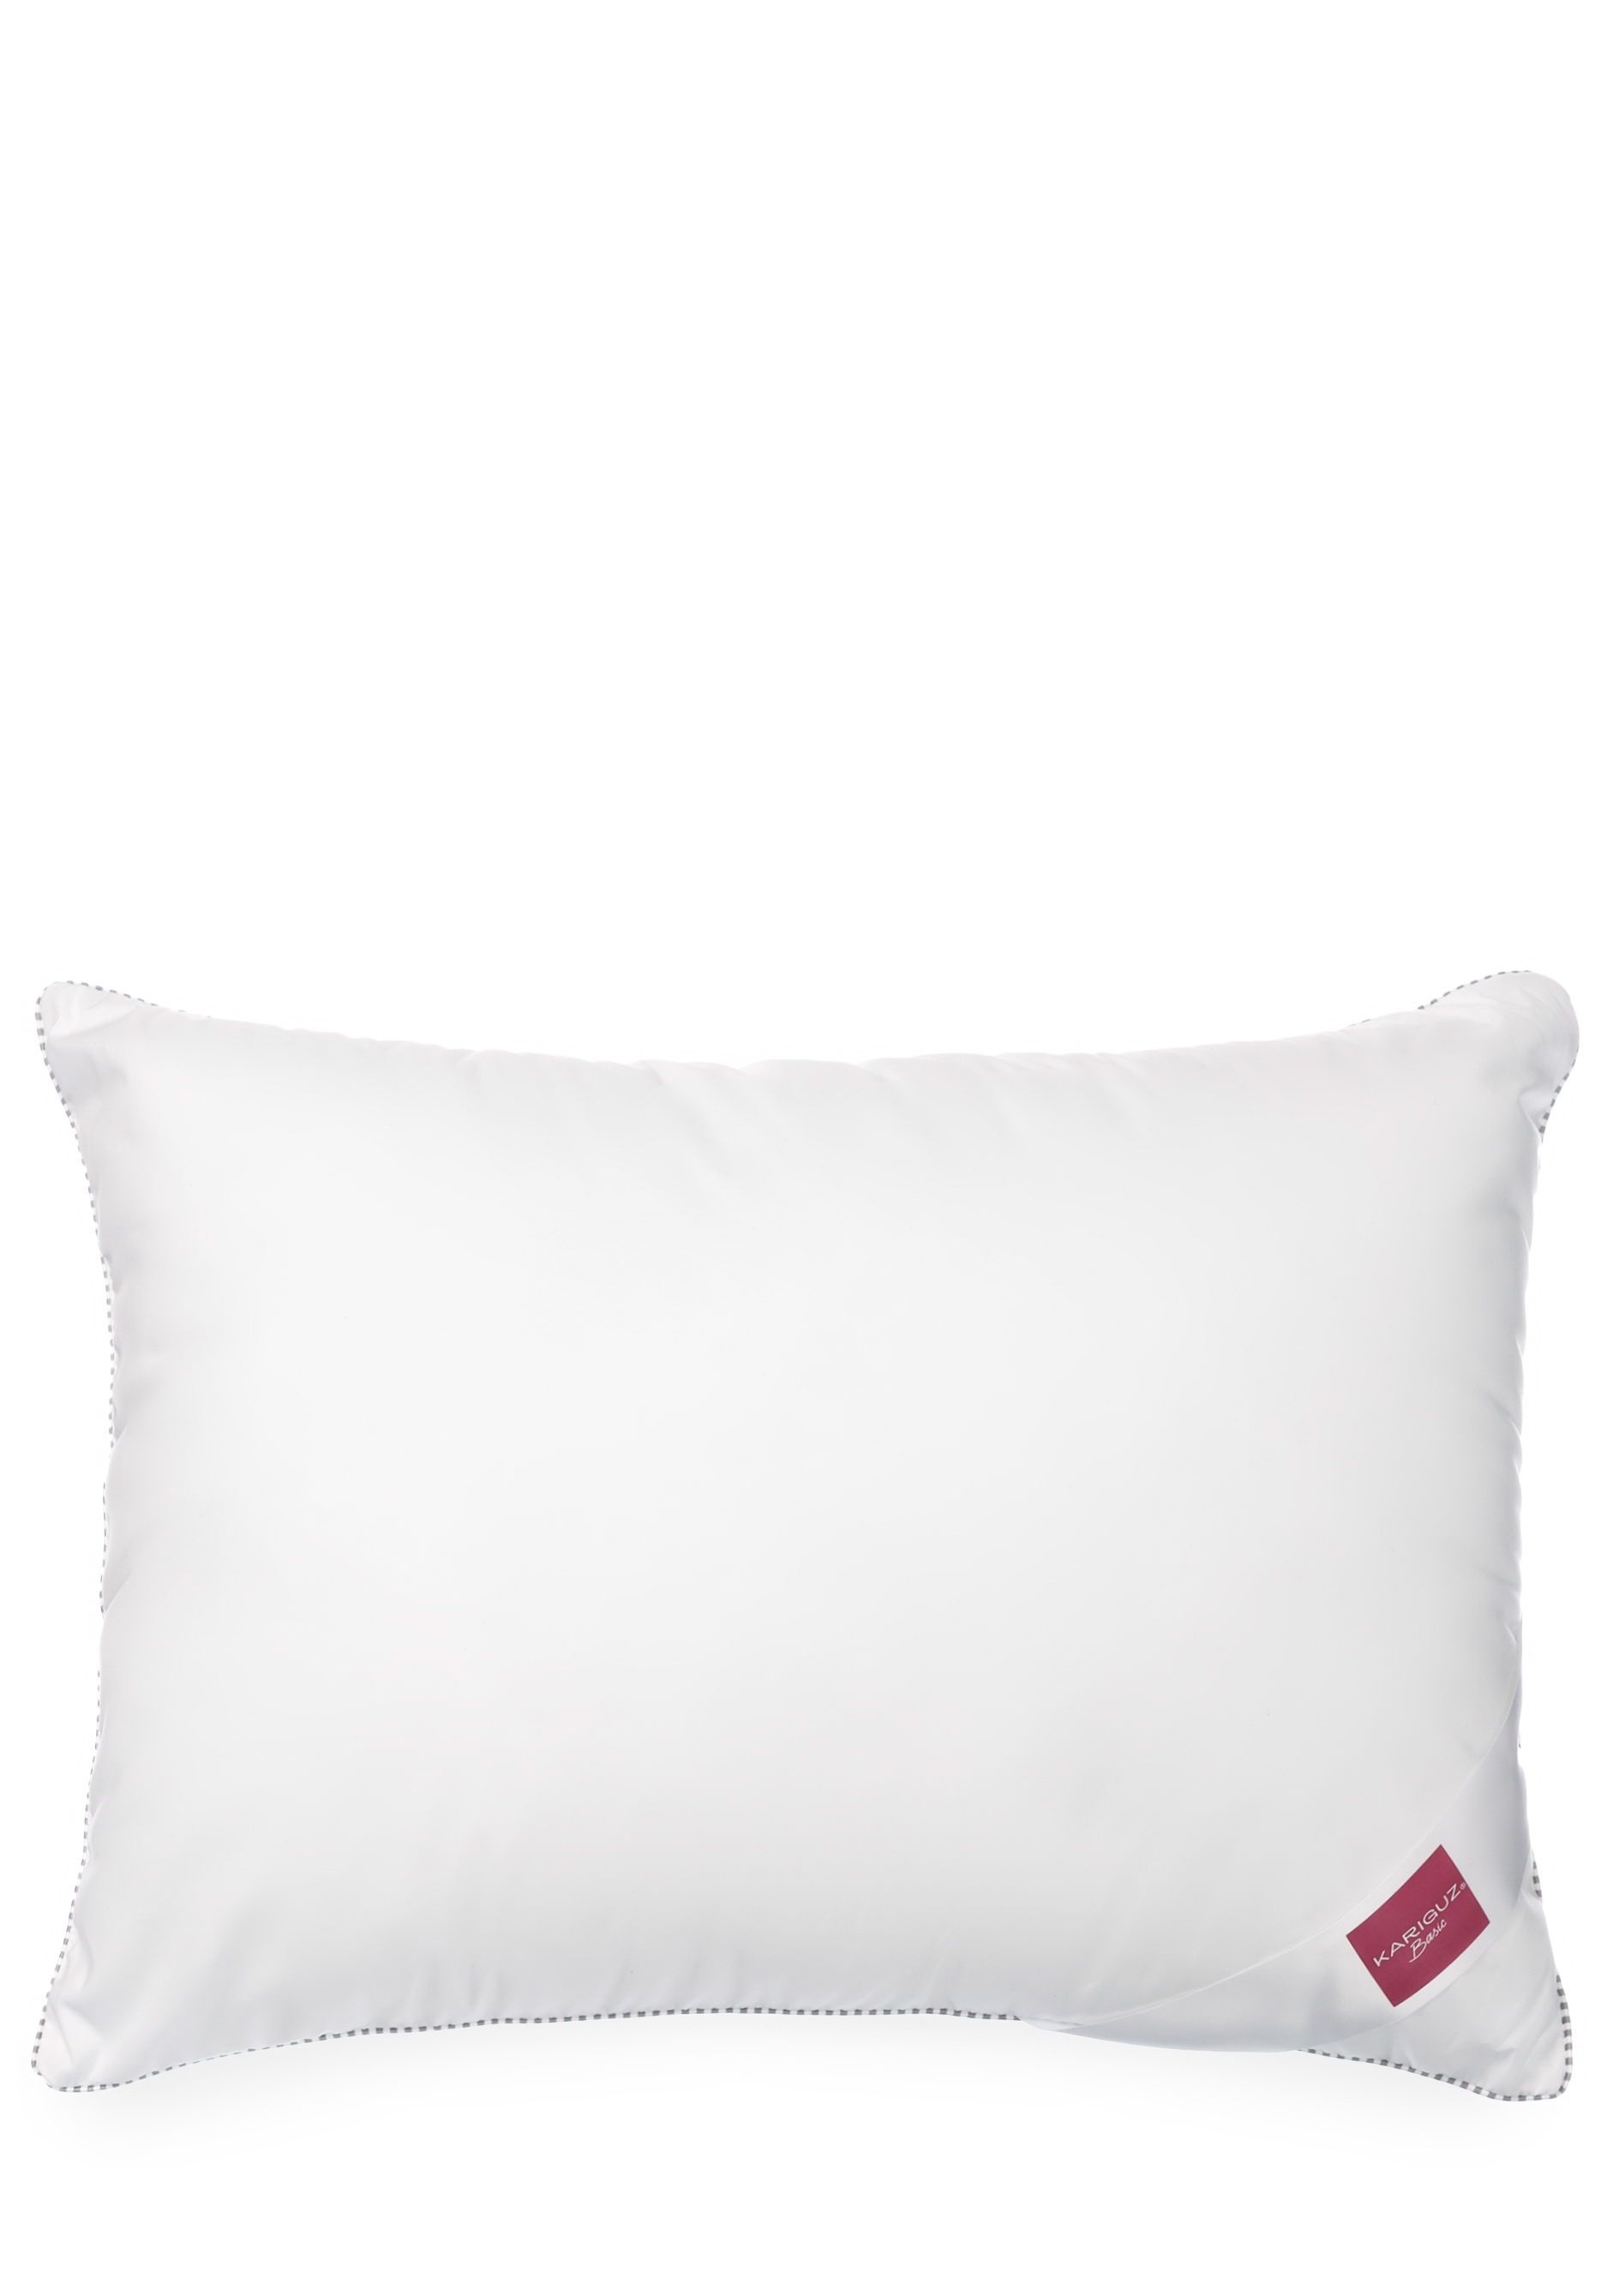 Подушка "Микрогель" KARIGUZ, цвет белый, размер 50*68